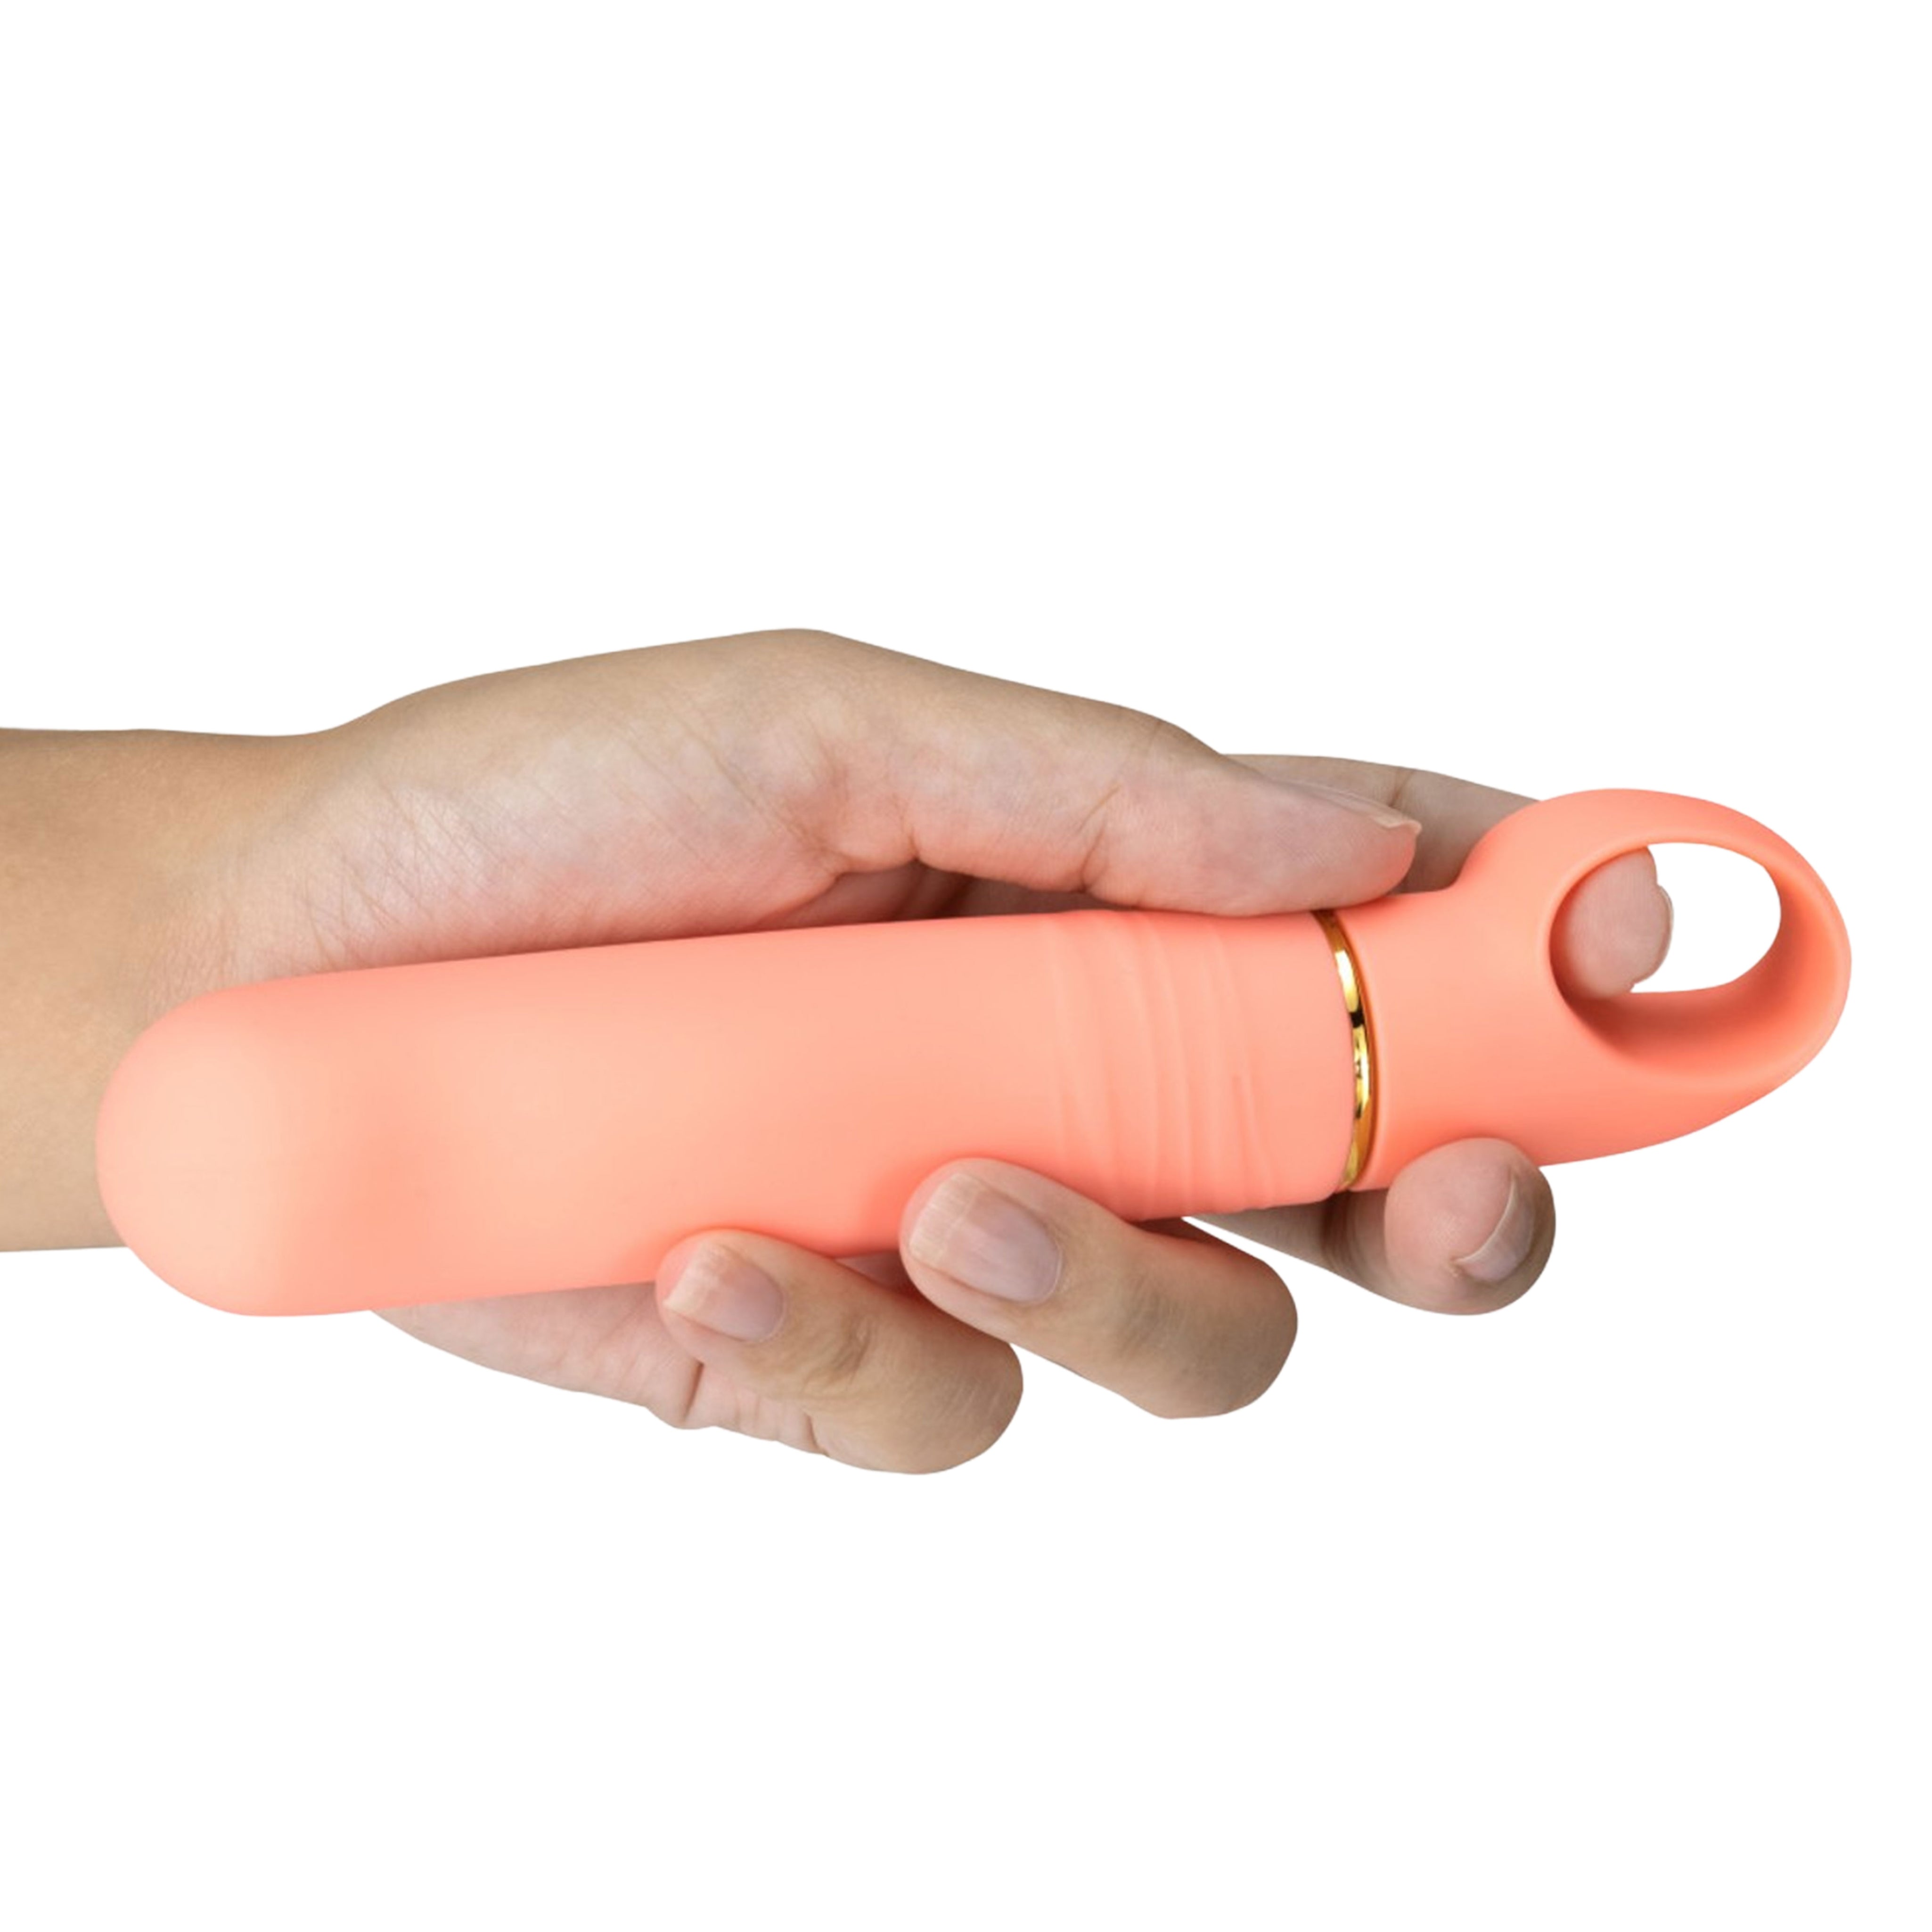 Aria Finger Holder Bangin' AF Silicone Vibrator - Coral